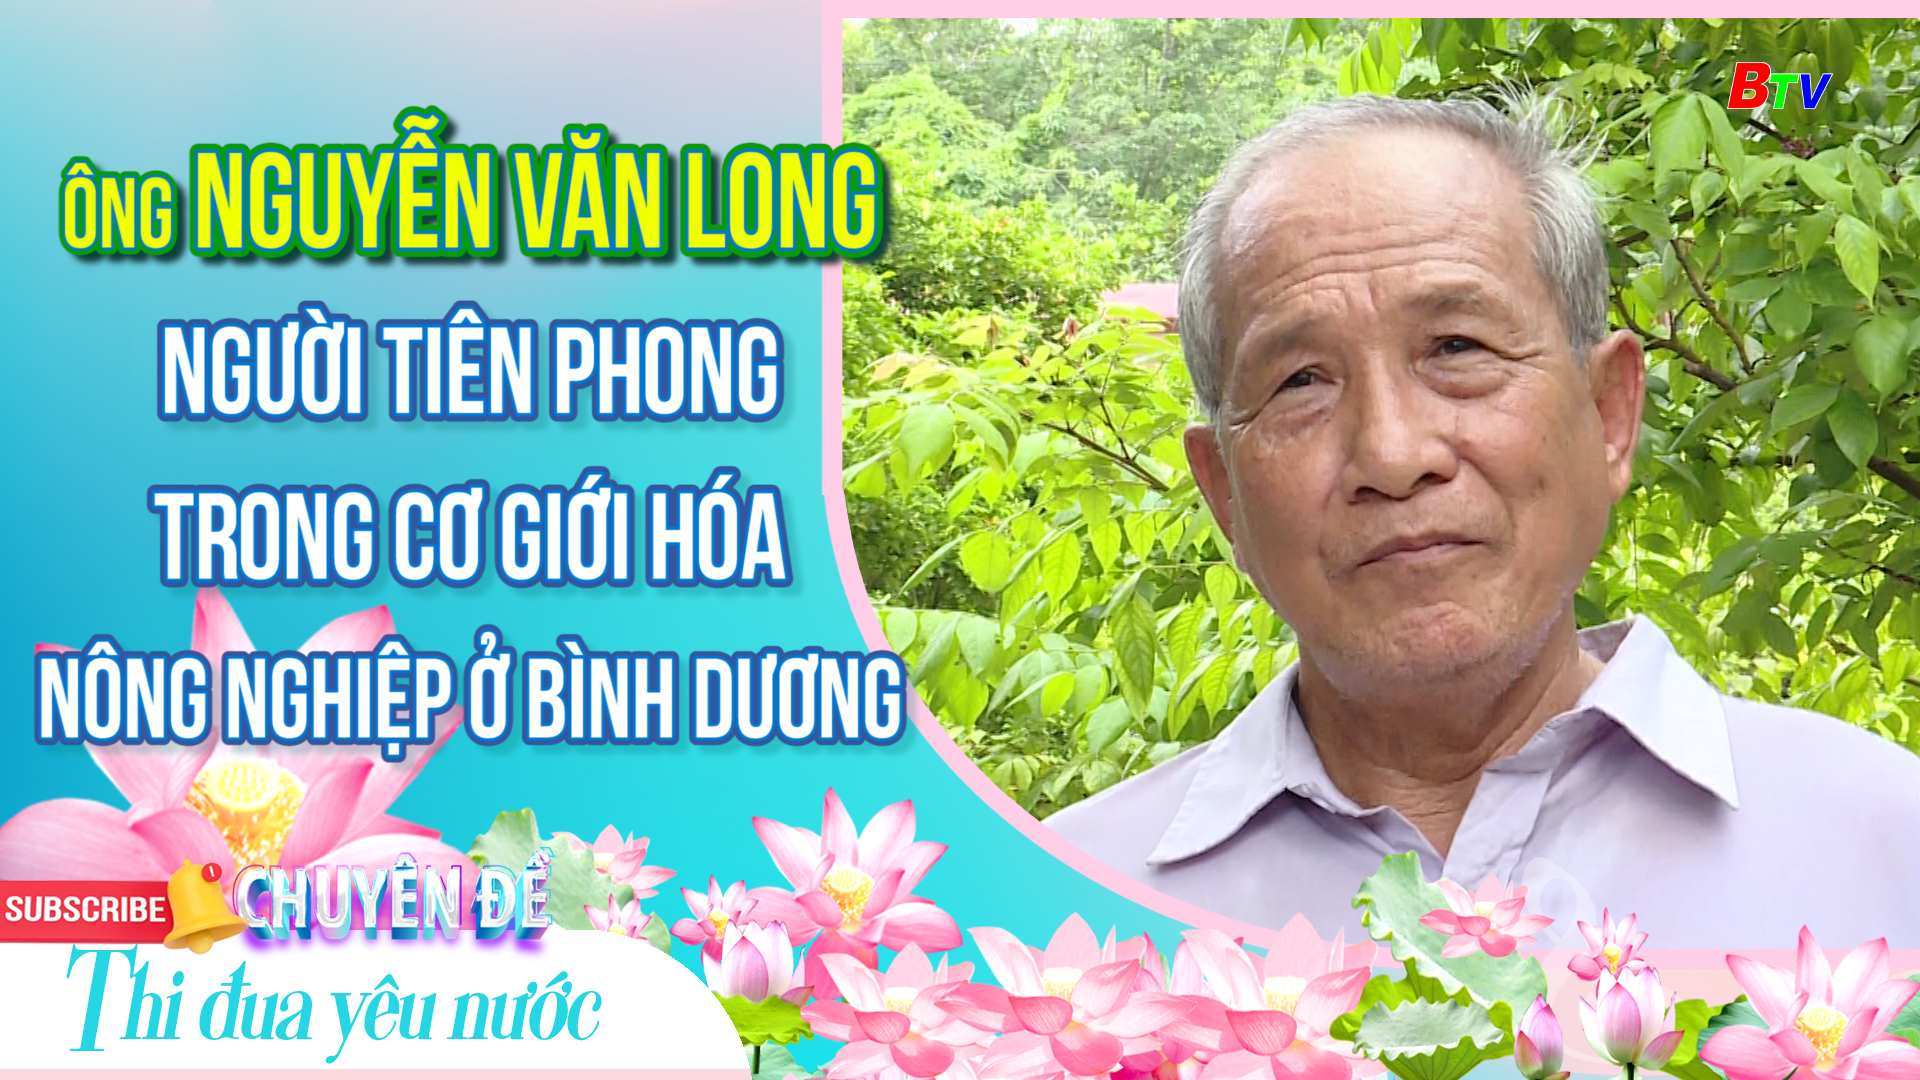 Ông Nguyễn Văn Long - Người tiên phong trong cơ giới hóa nông nghiệp ở Bình Dương